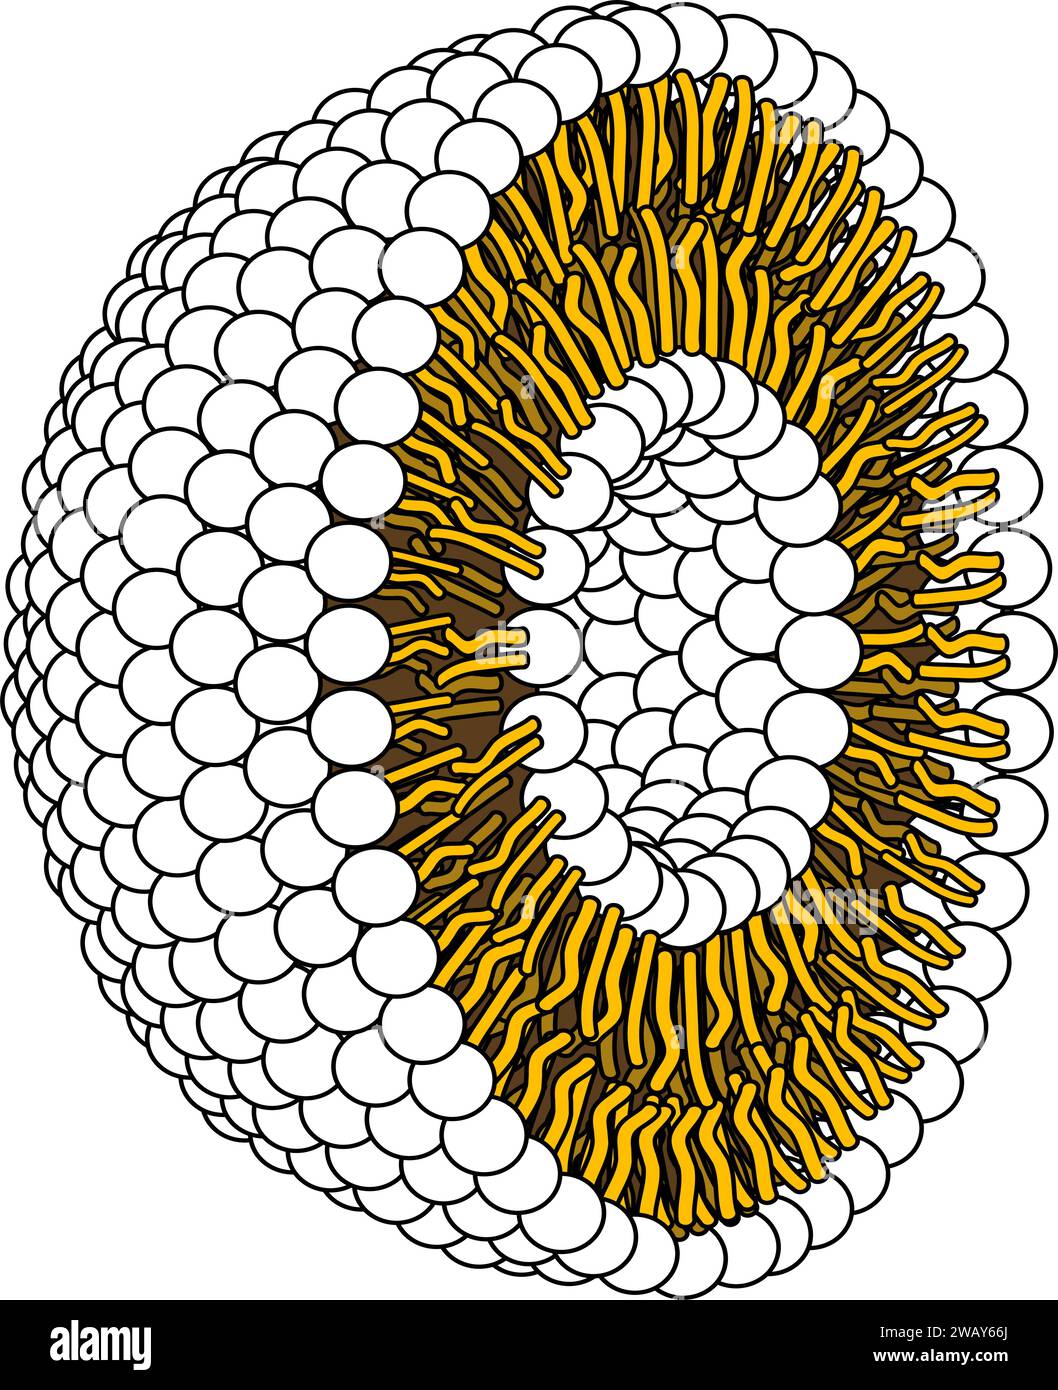 Structure de la molécule phospholipidique dans le liposome.Illustration vectorielle. Illustration de Vecteur